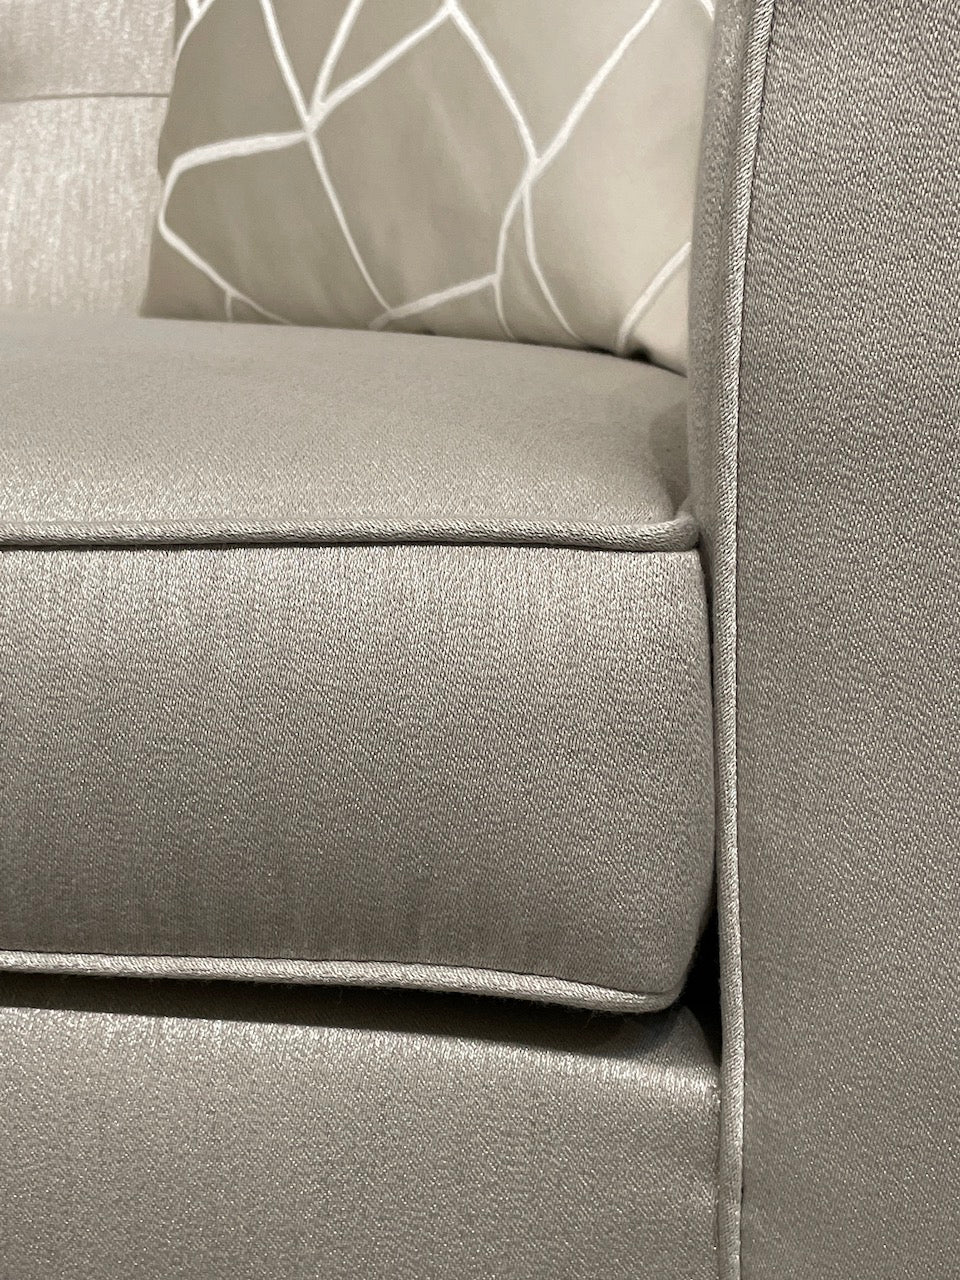 Diamanti 2 Seater - Future Classics Furniture